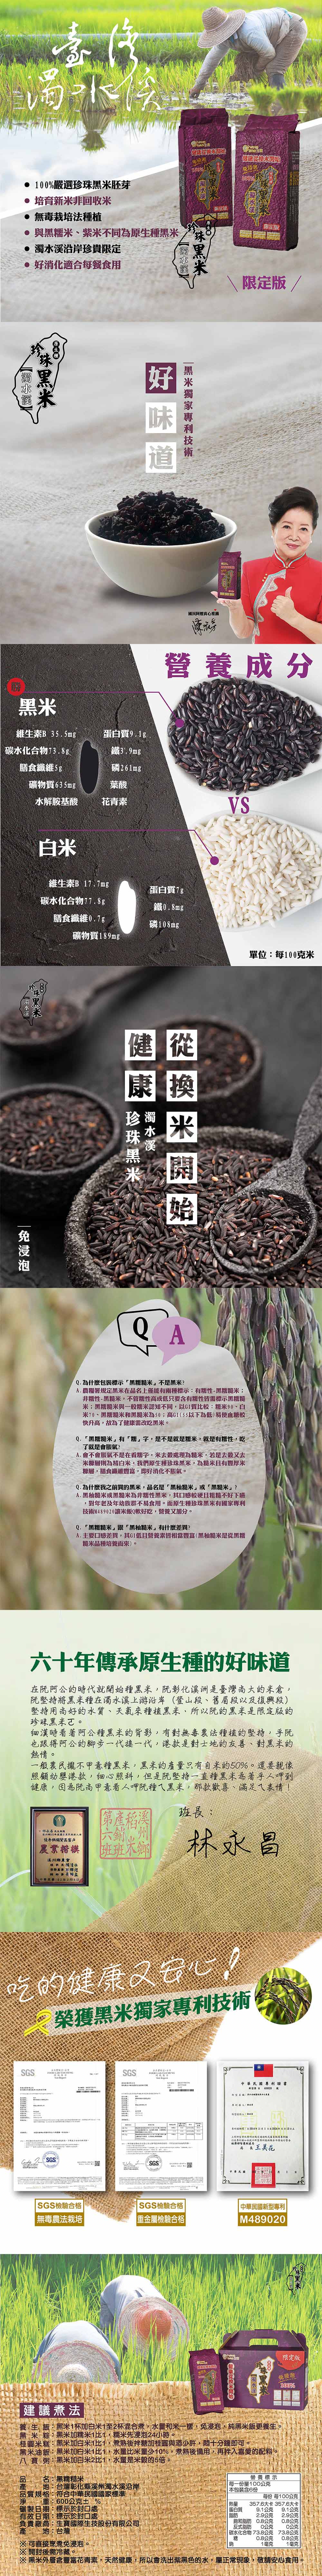 【鮮味達人】濁水溪珍珠黑米600g 陳淑芳推薦 無毒栽培種植 黑糯糙米